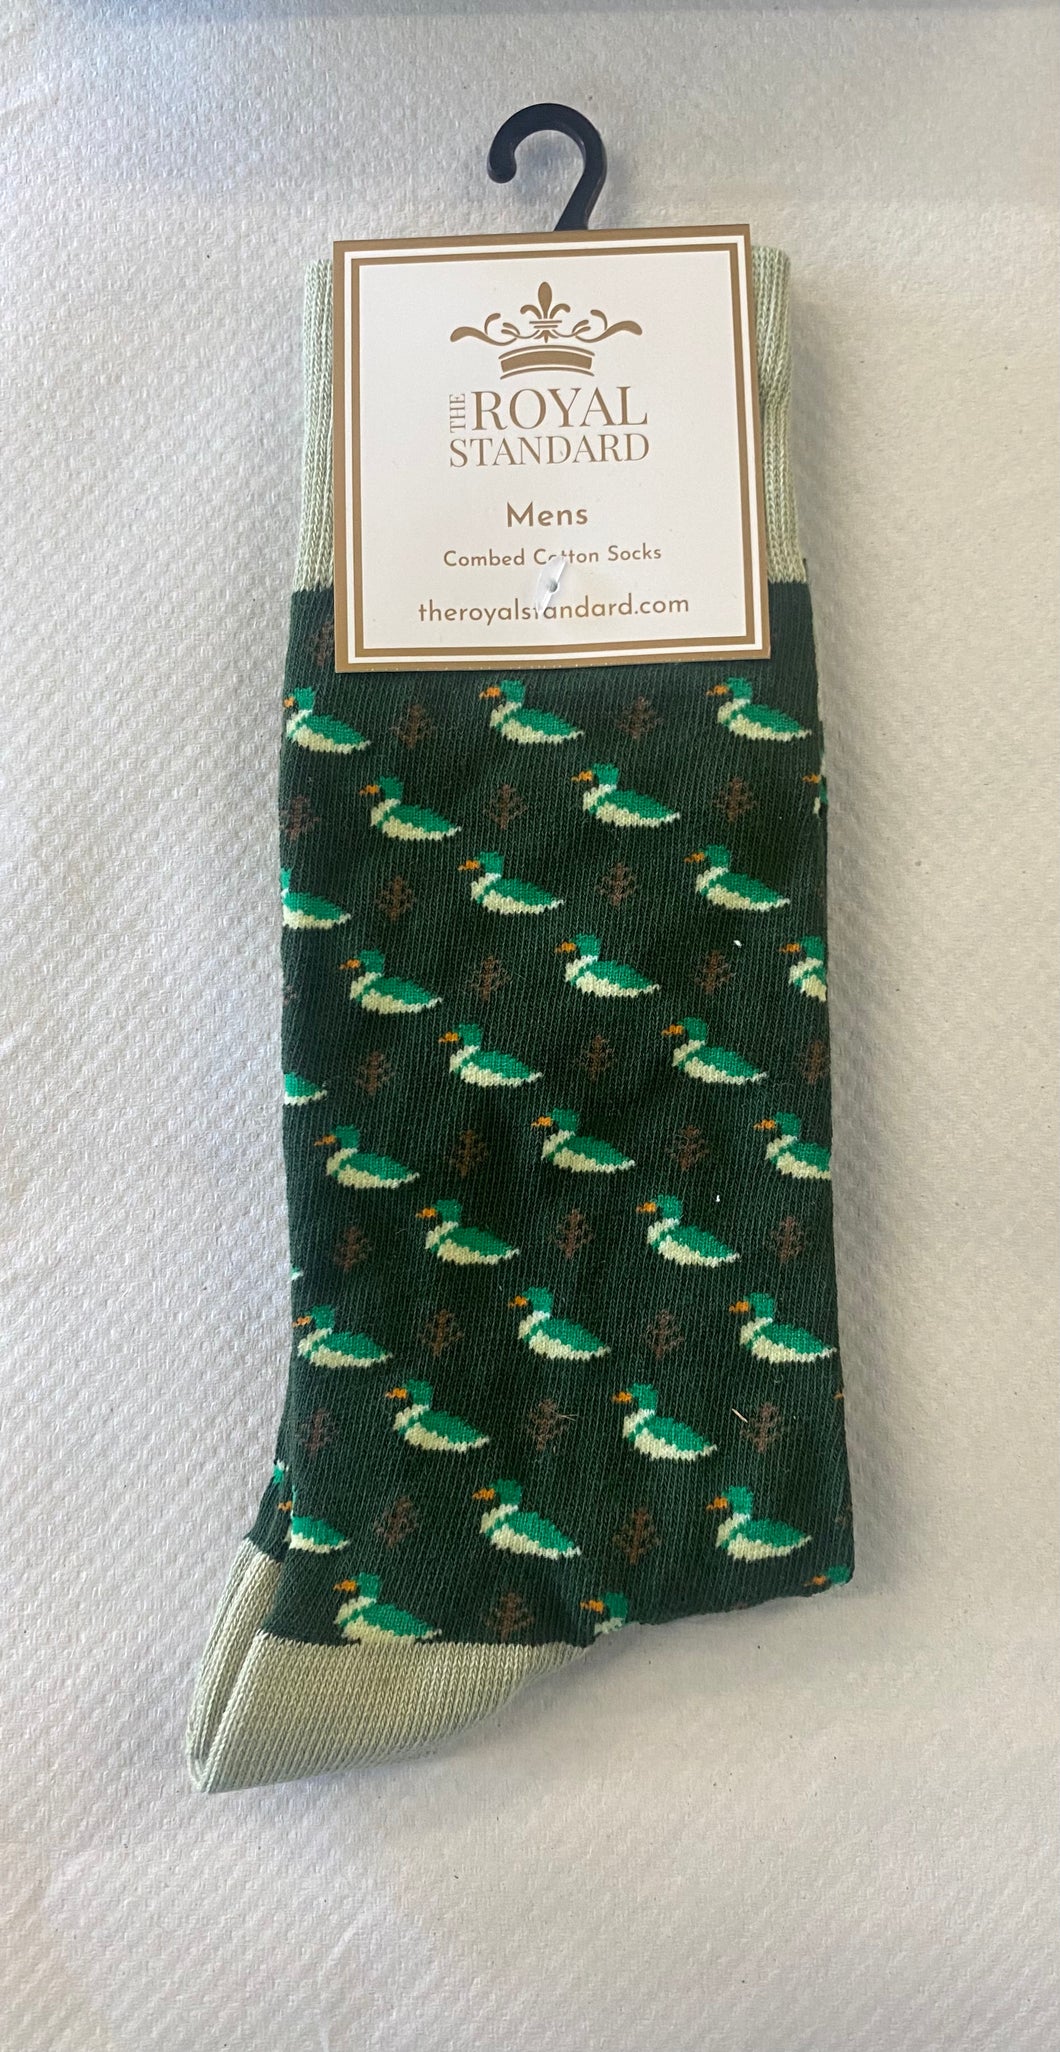 Men’s Trouser Duck Socks